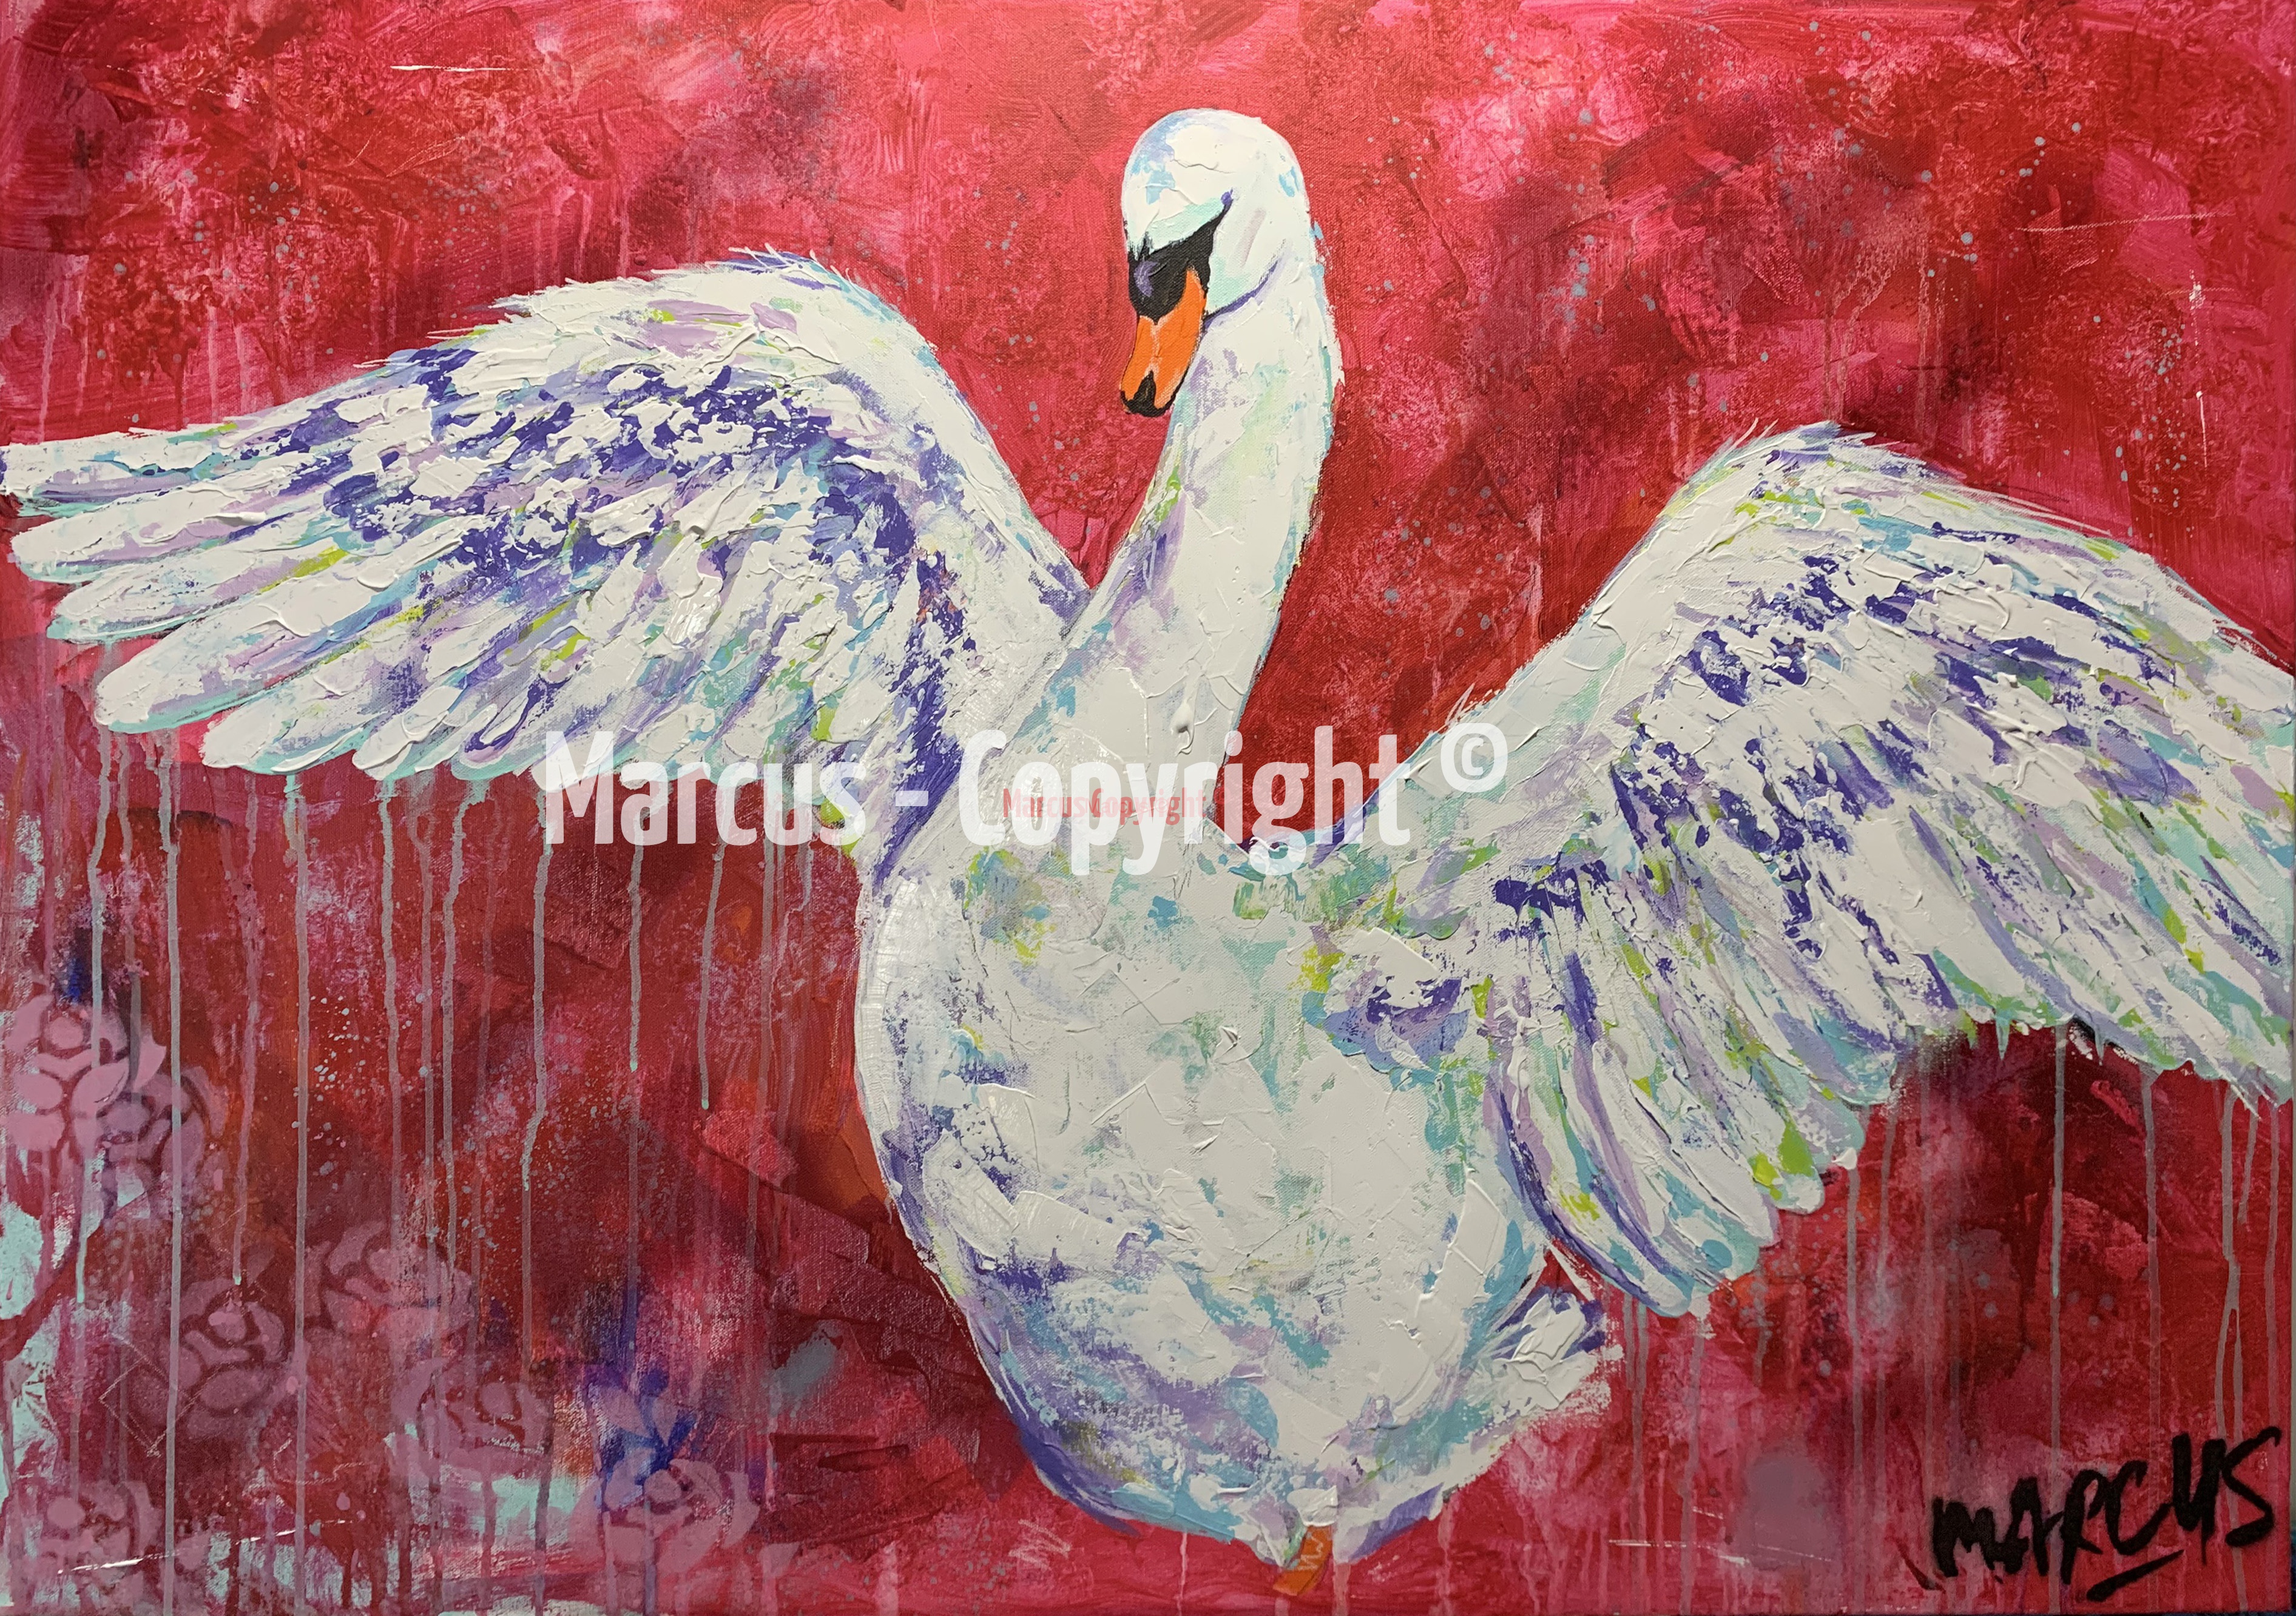 Marcus | The swan rises